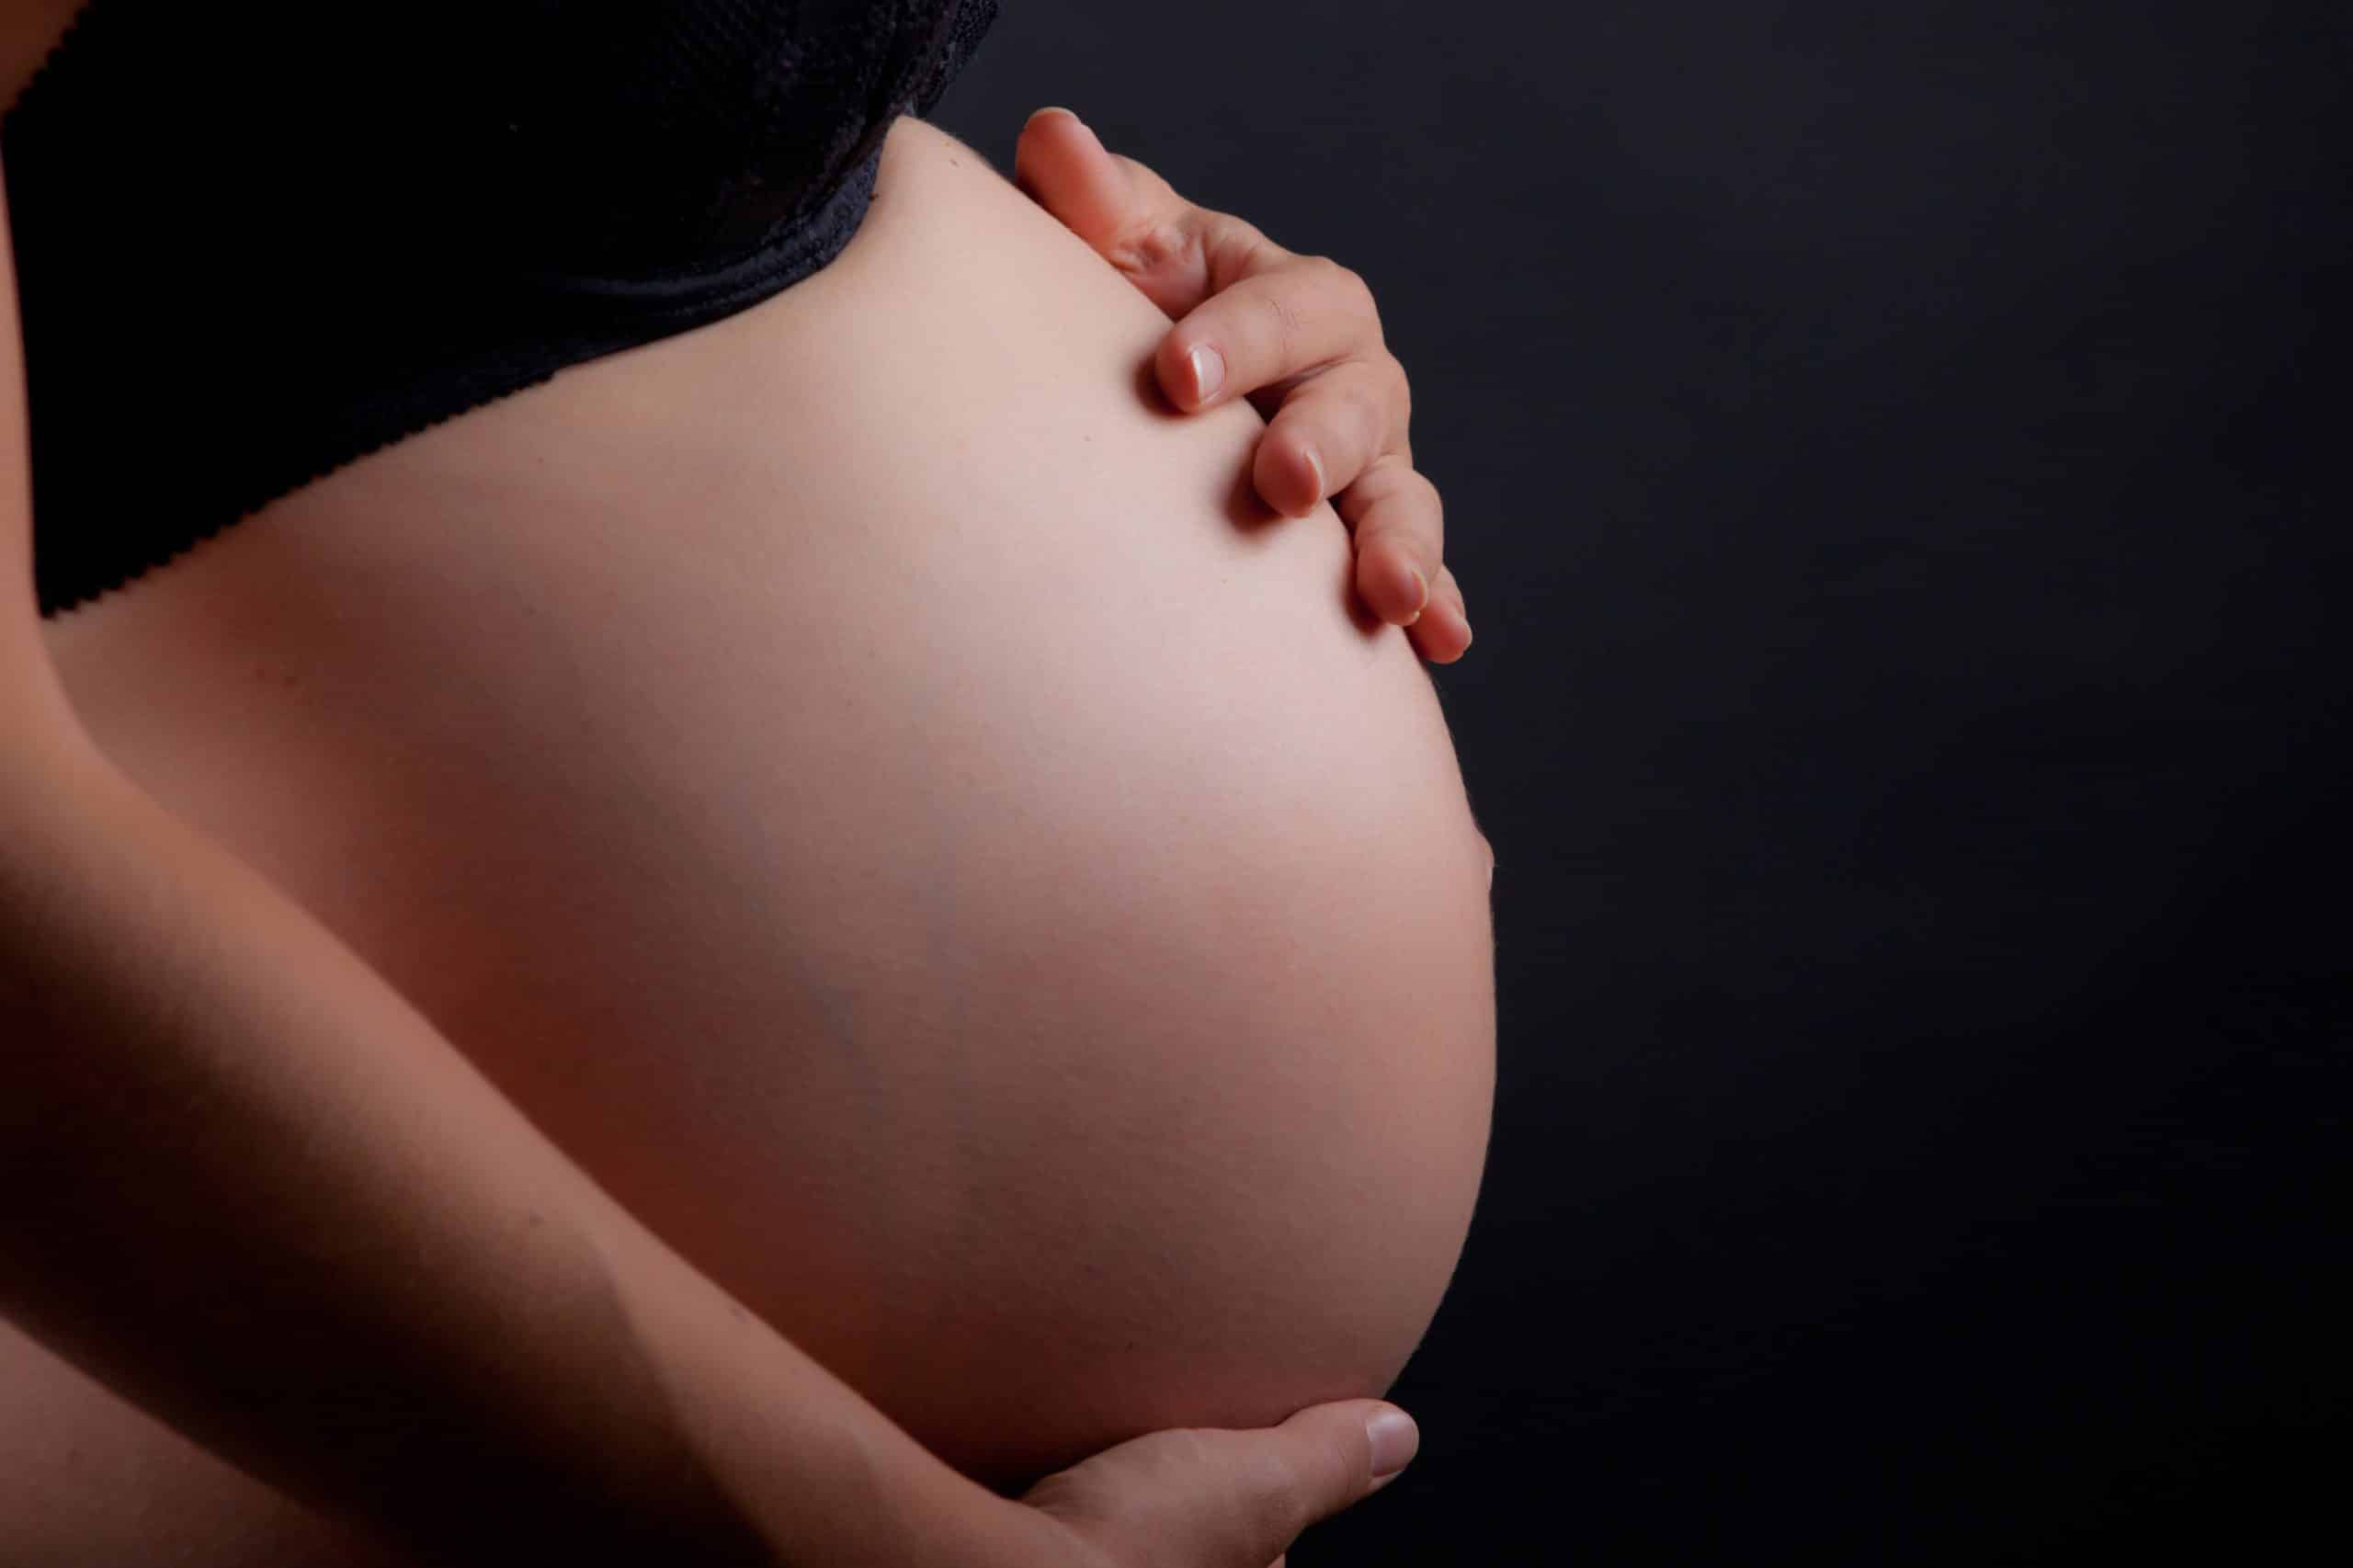 Maternidad subrogada o vientres de
alquiler se oponen asociaciones feministas